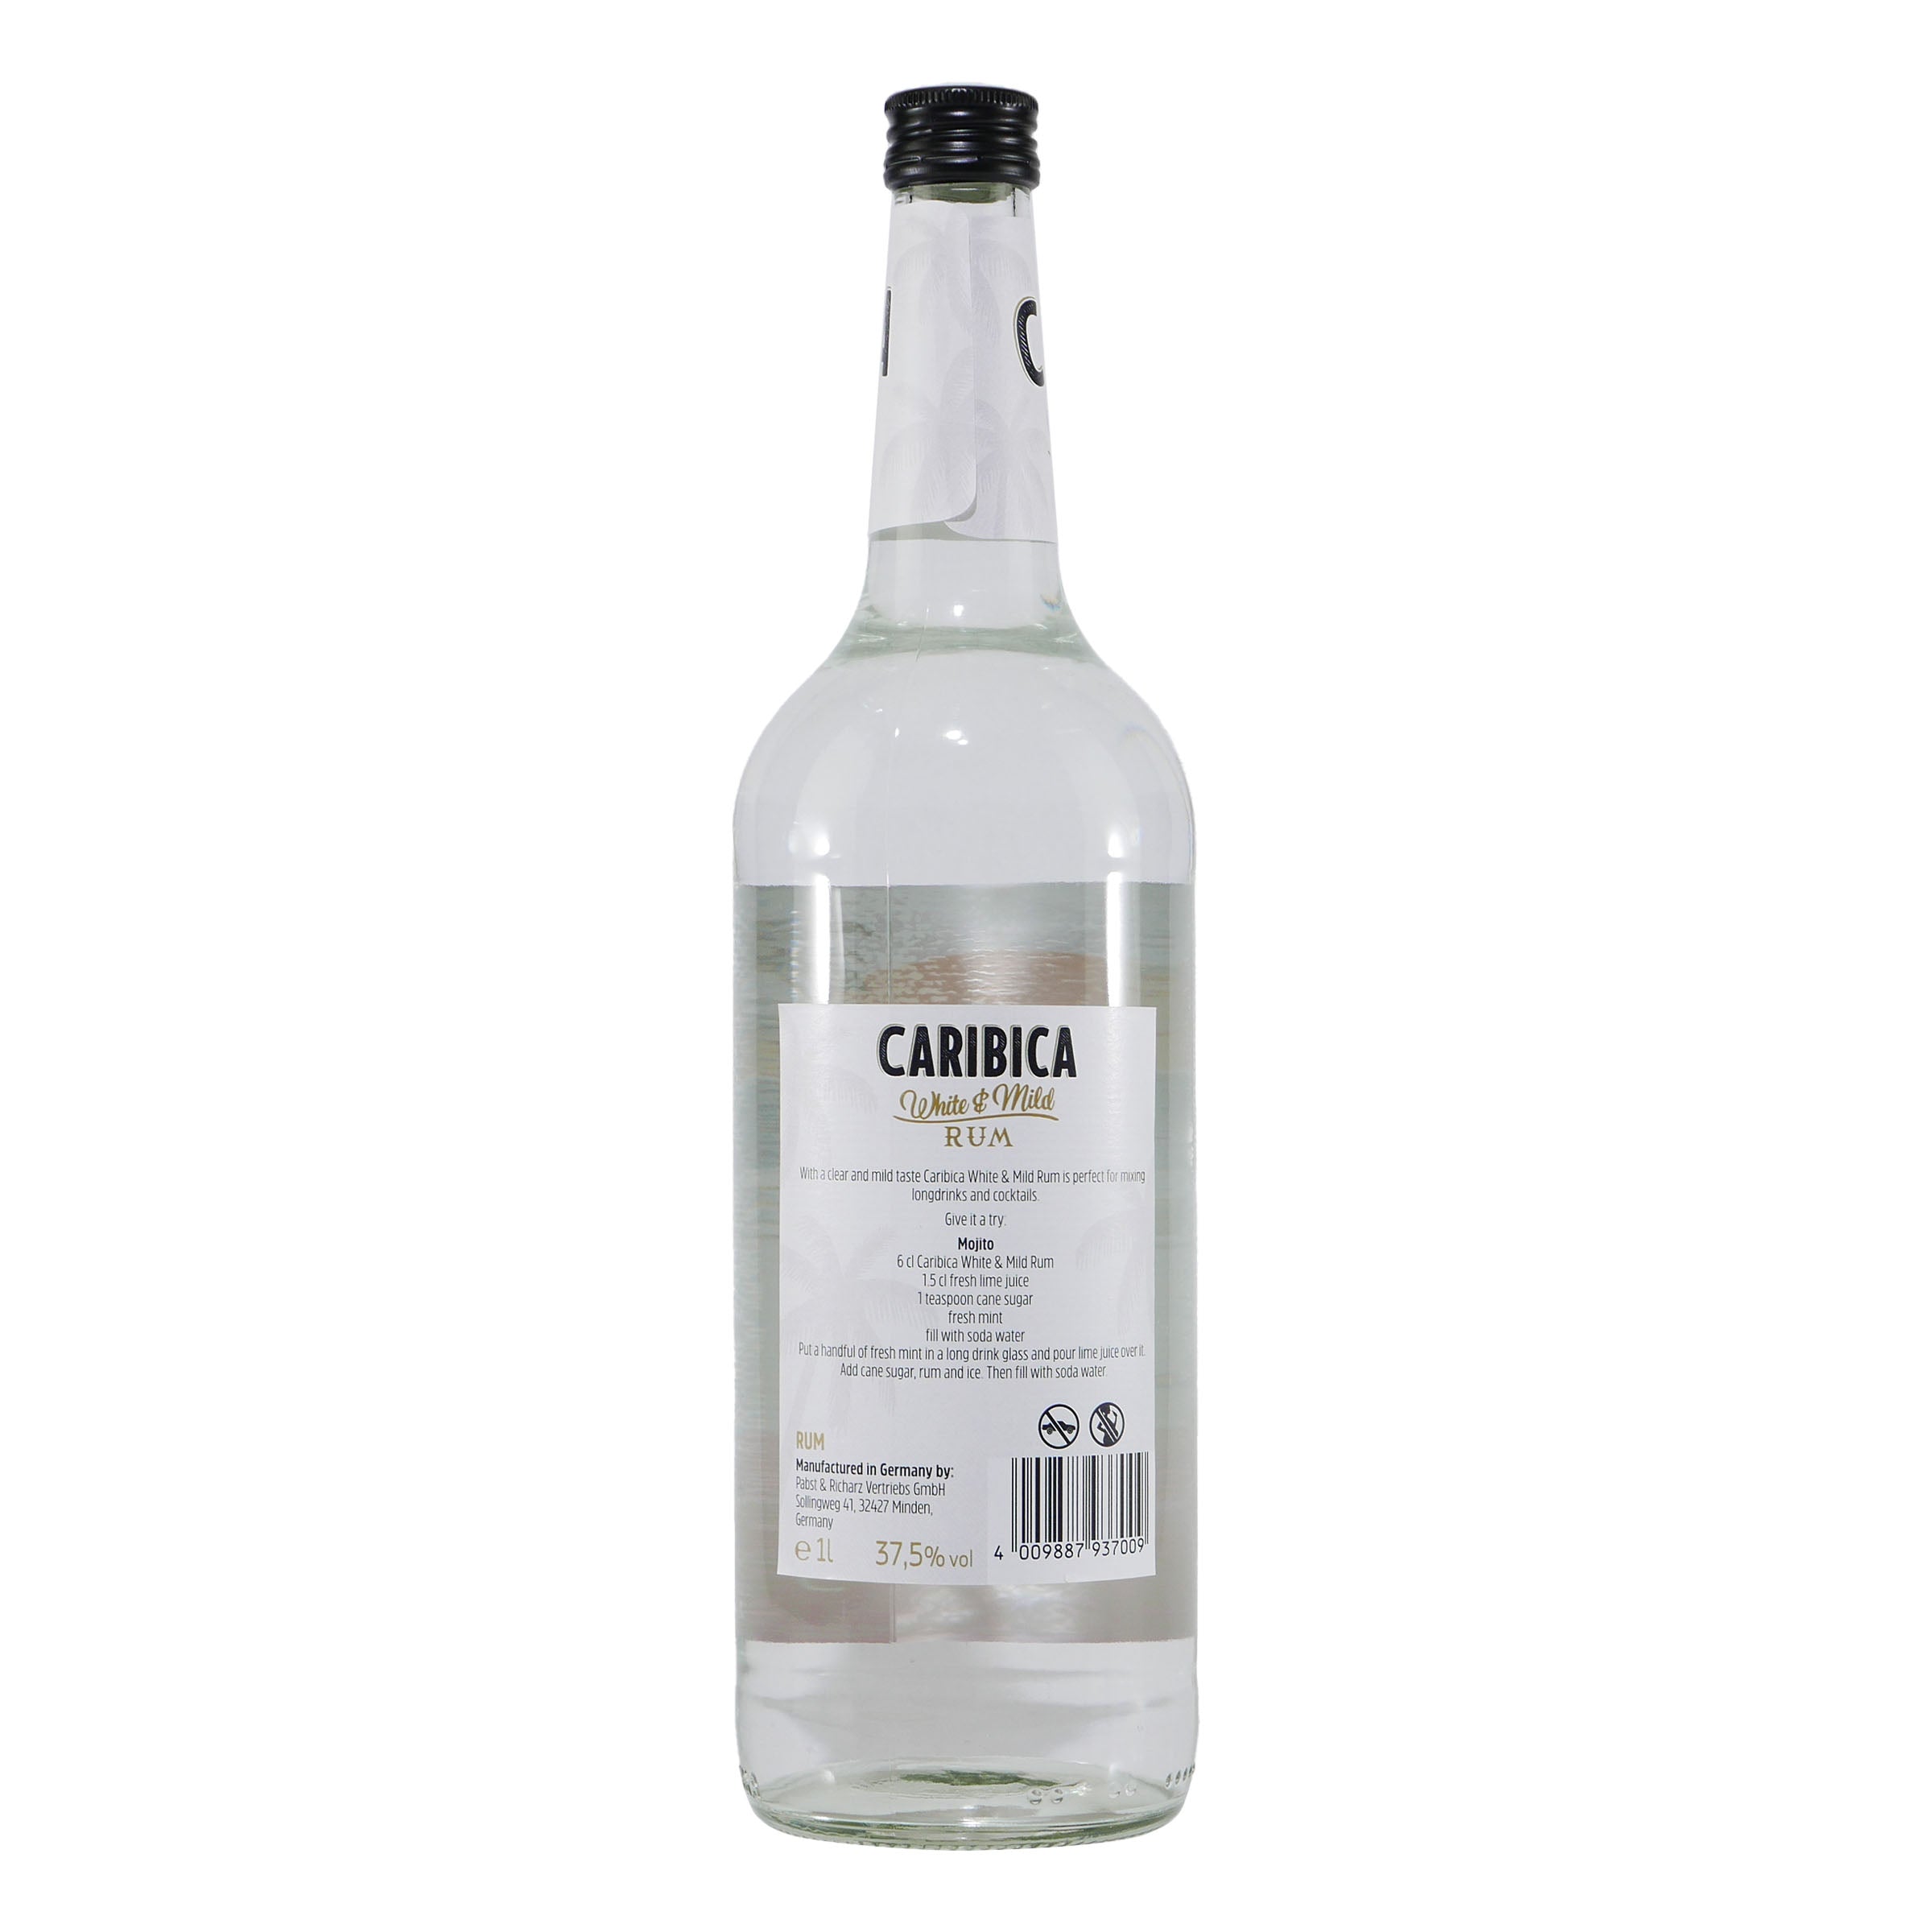 Caribica White & Mild Rum